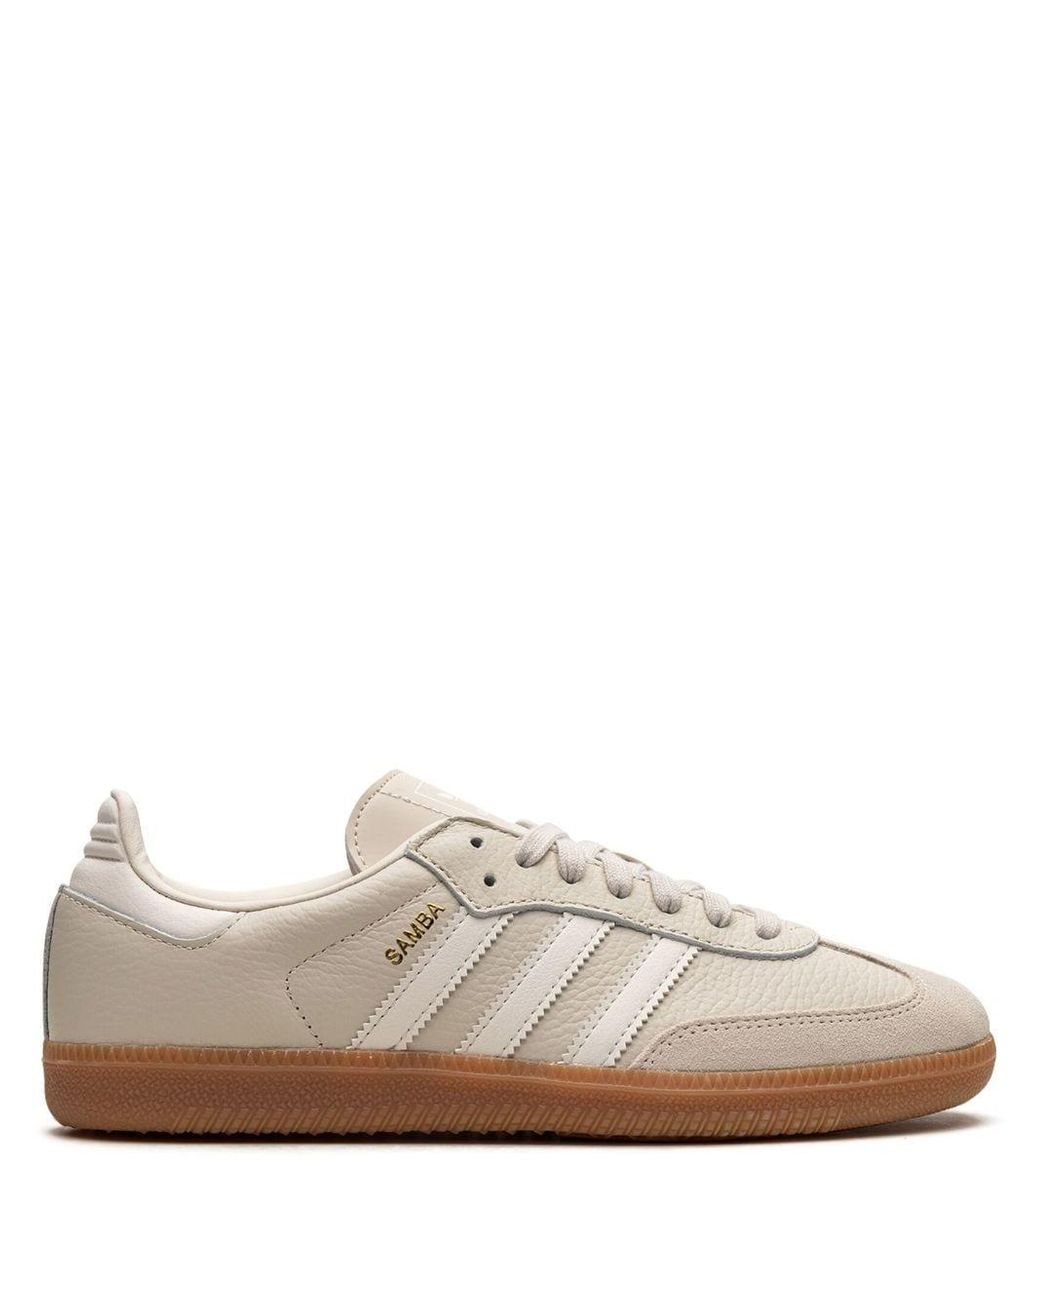 adidas Samba Og "beige/white" Sneakers | Lyst